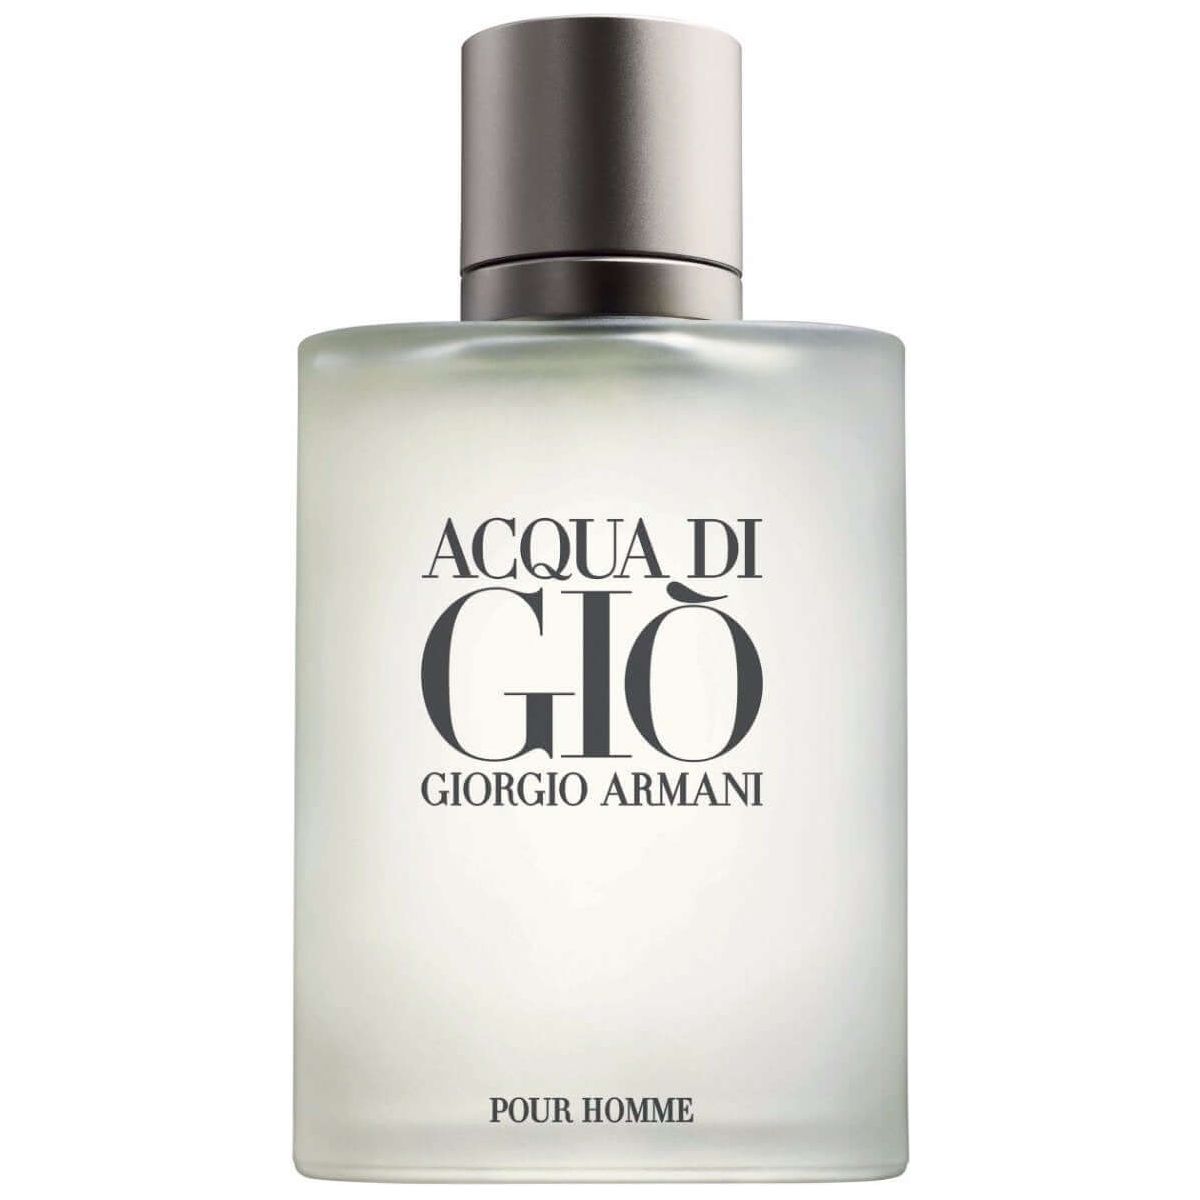 Armani Acqua Di Gio Cologne Perfume Empire